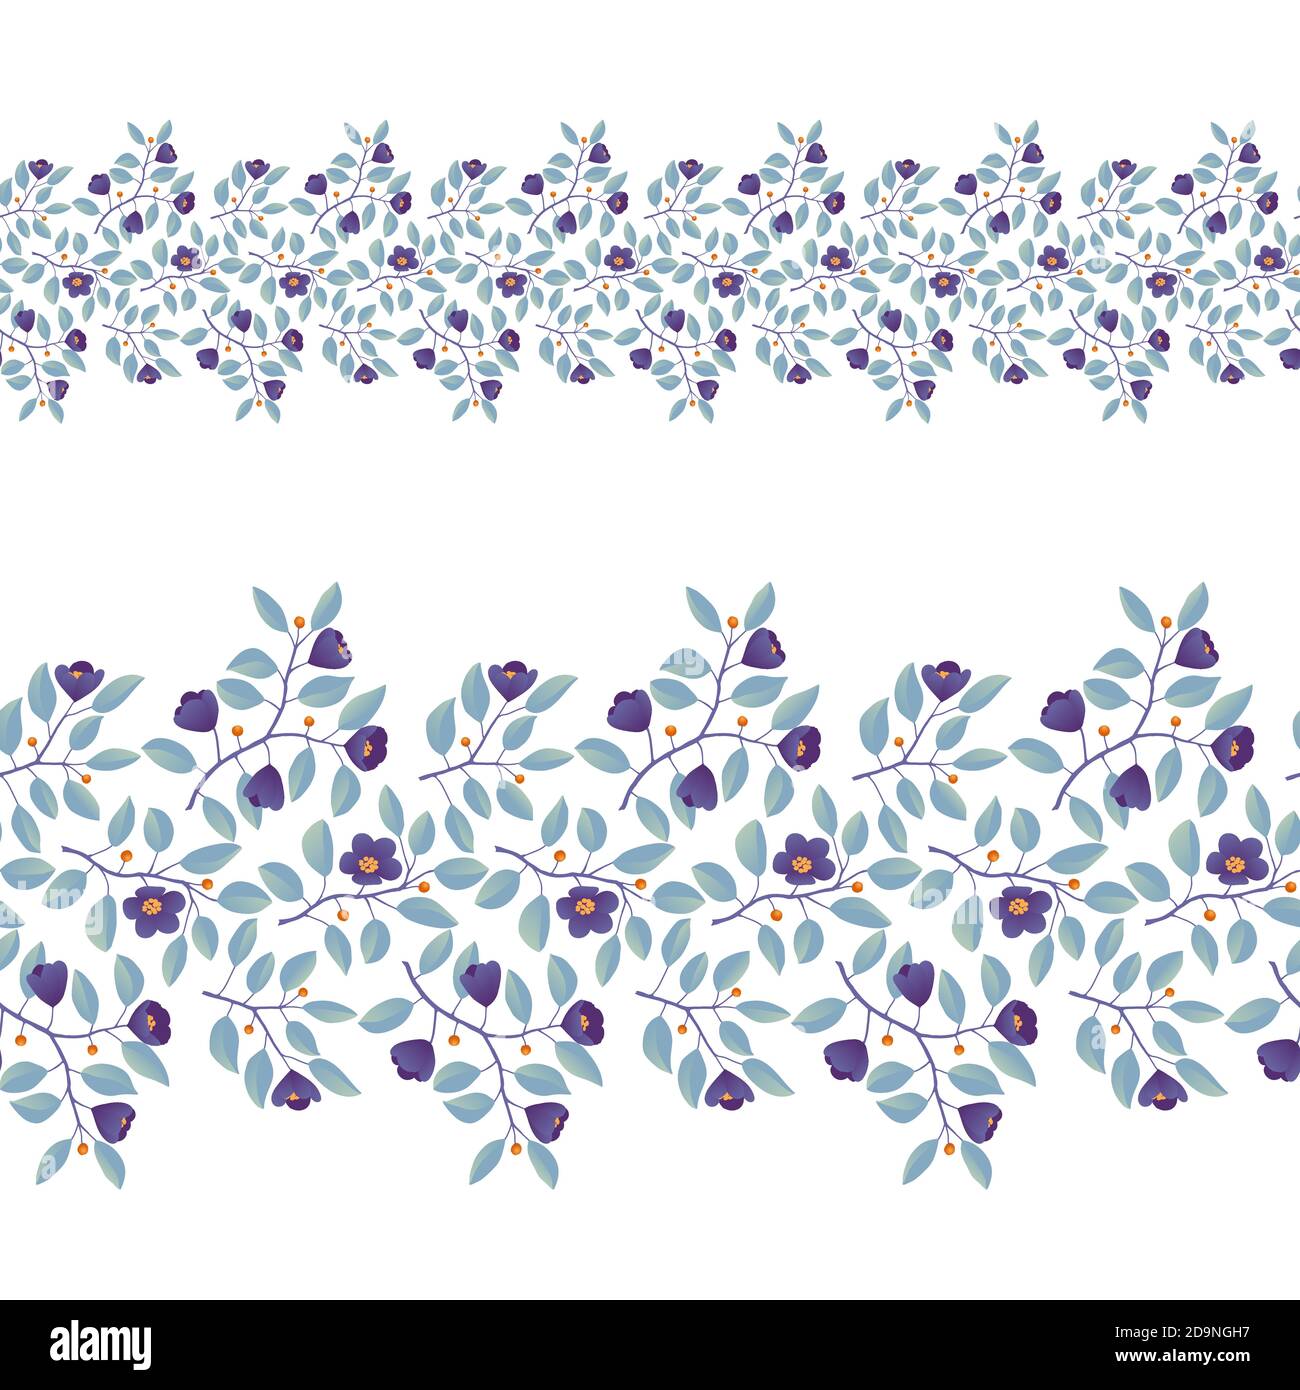 Bordure florale, branches avec feuilles de sarcelle et fleurs violettes sur blanc. Illustration vectorielle, design pour affiche, bannière, invitation, livre, tissu de mode, emballage. Illustration de Vecteur